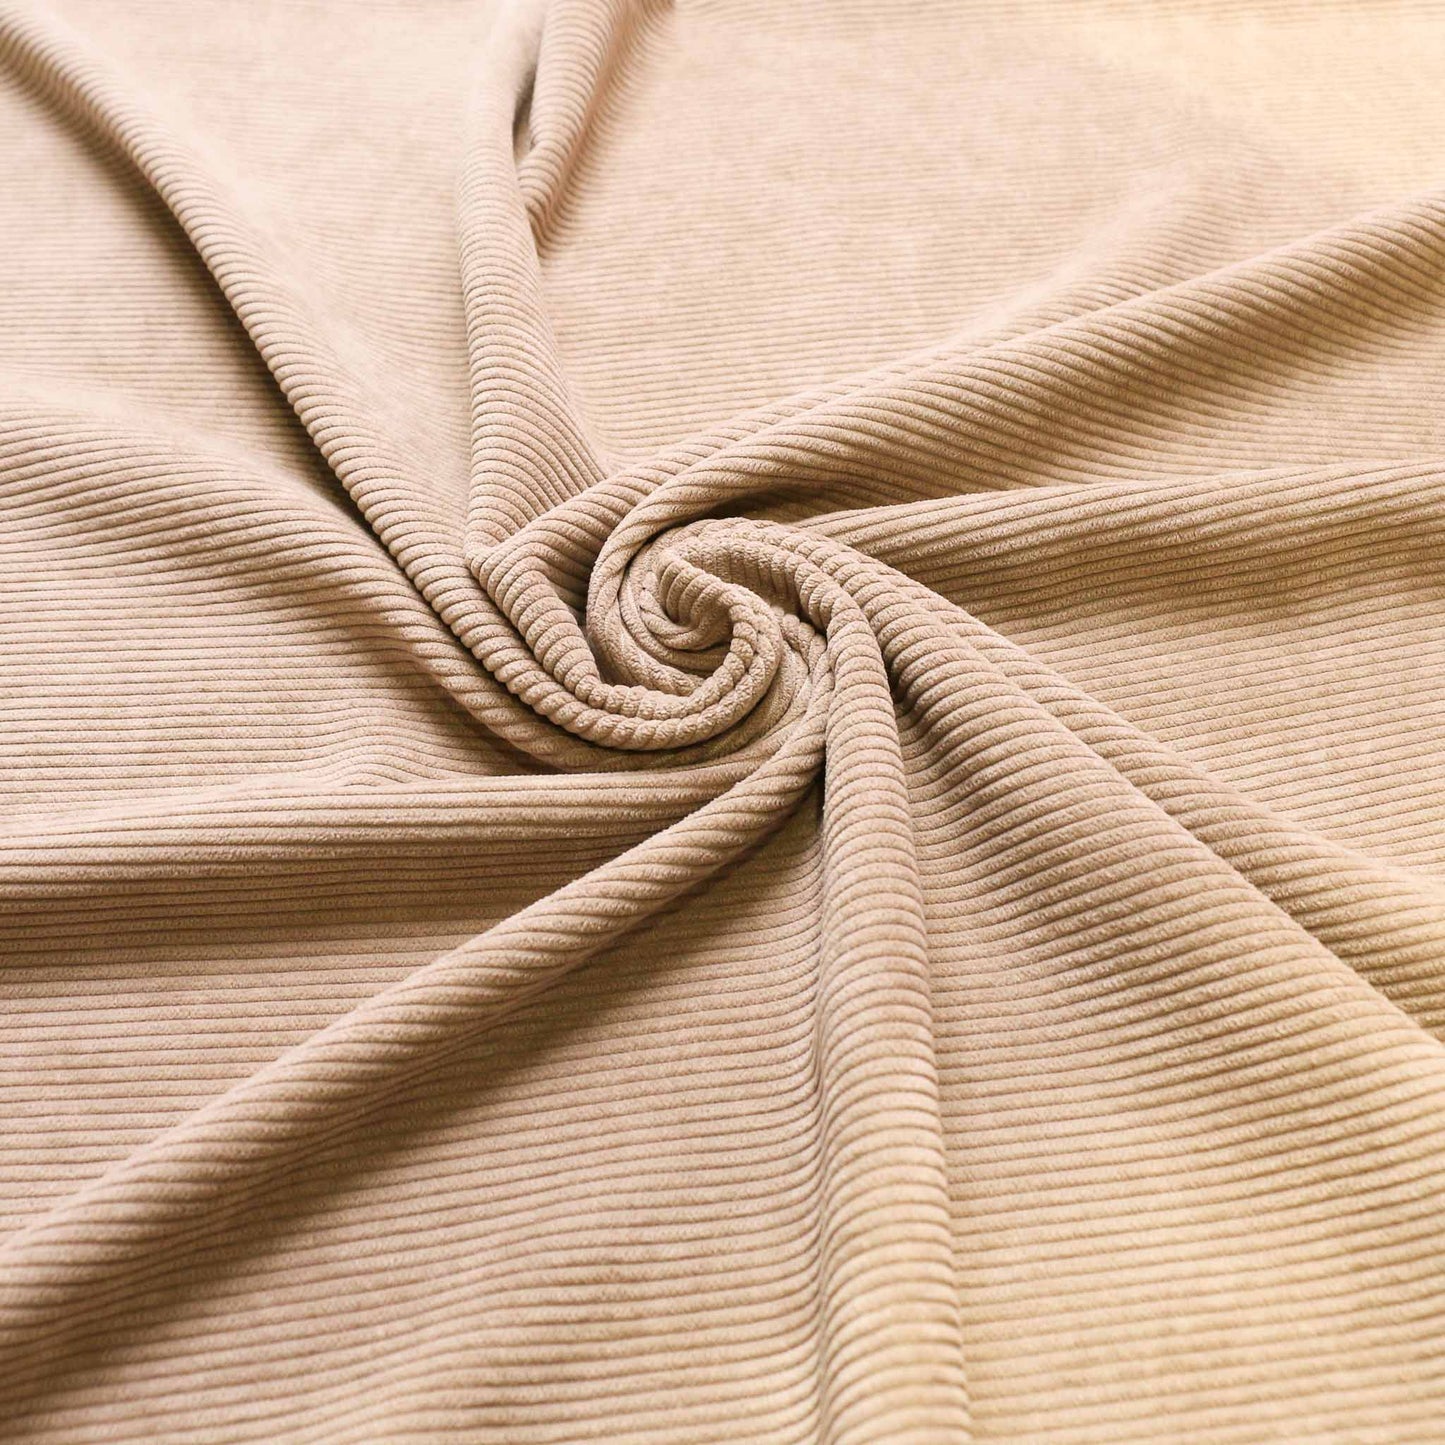 8 wale corduroy dressmaking fabric in beige